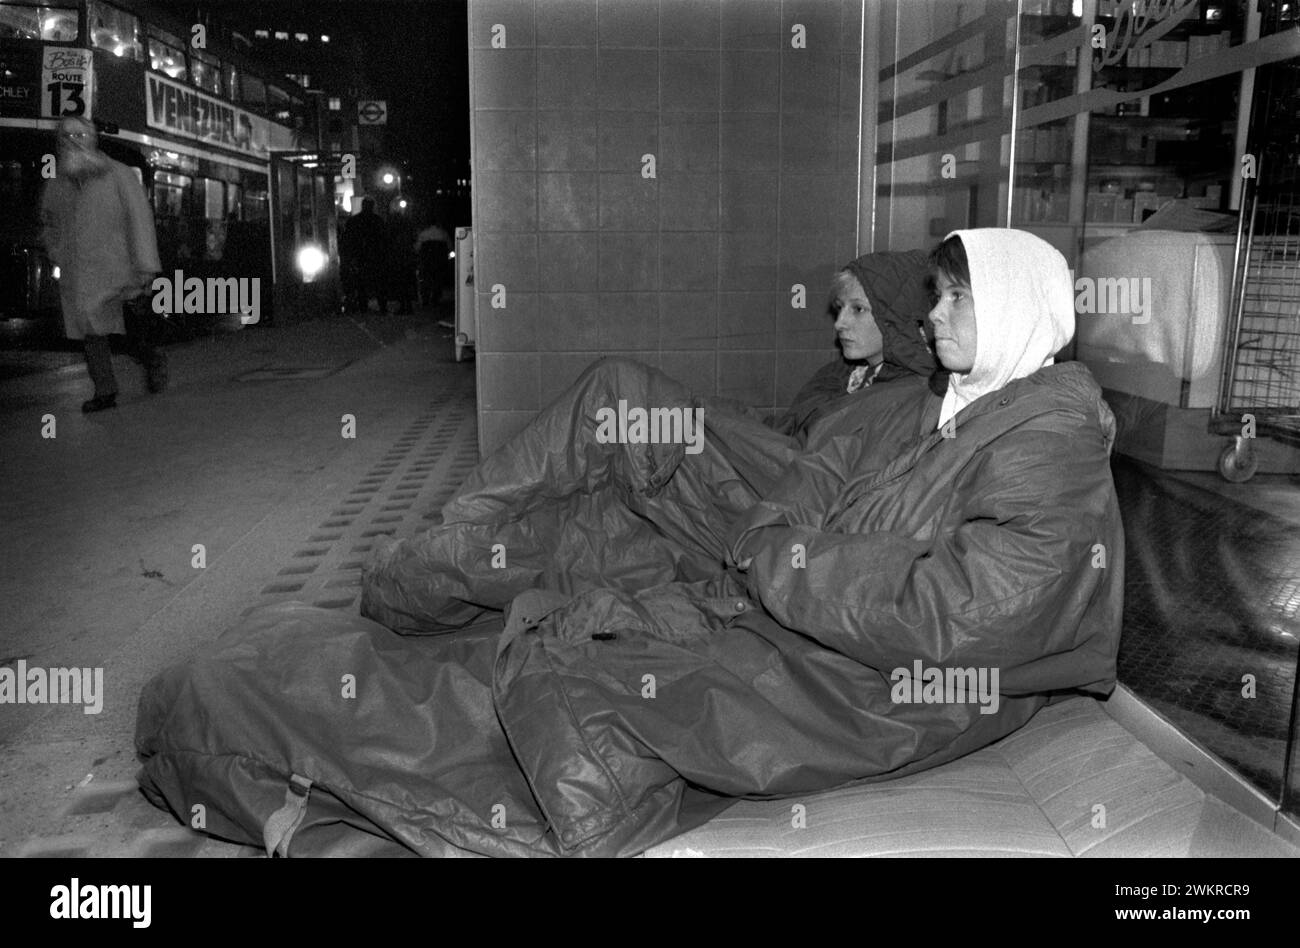 Schlafen auf der Straße rauer Schlaf, obdachlose entlaufene Teenager Mädchen, die in einem Ladentor in The Strand, Zentrum von London, rauh schlafen. Sie haben Pappe gesammelt, um auf dem Bett zu schlafen, für etwas zusätzliche Wärme. London, England 1990 1990er Jahre, Großbritannien HOMER SYKES Stockfoto